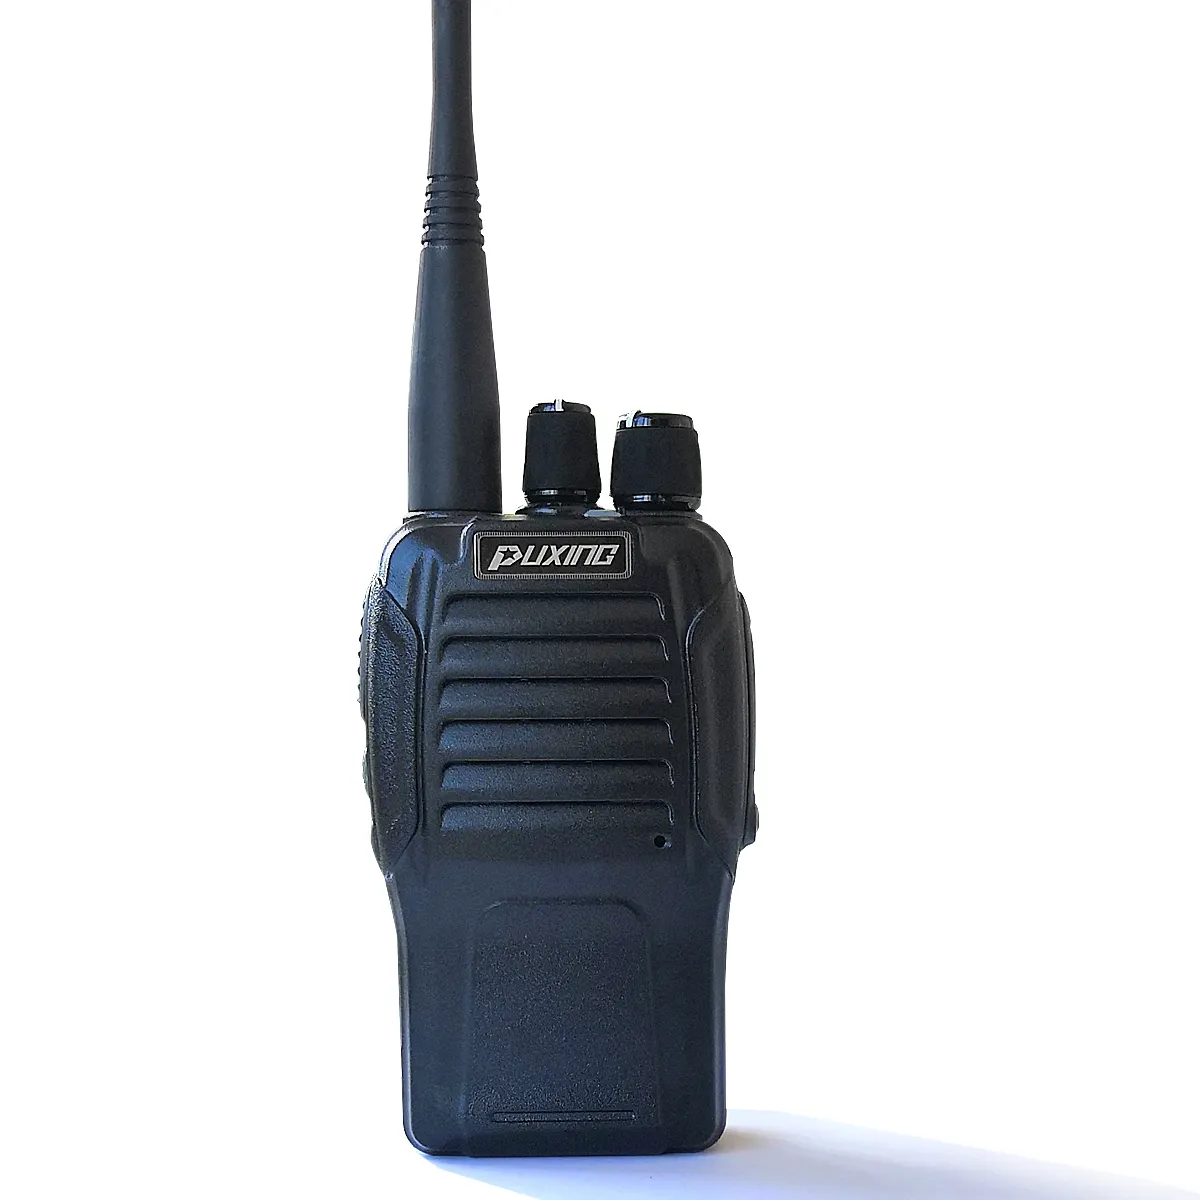 PX-V8 ucuz radyo px iki yönlü telsiz puxing walkie talkie 100 km aralığı